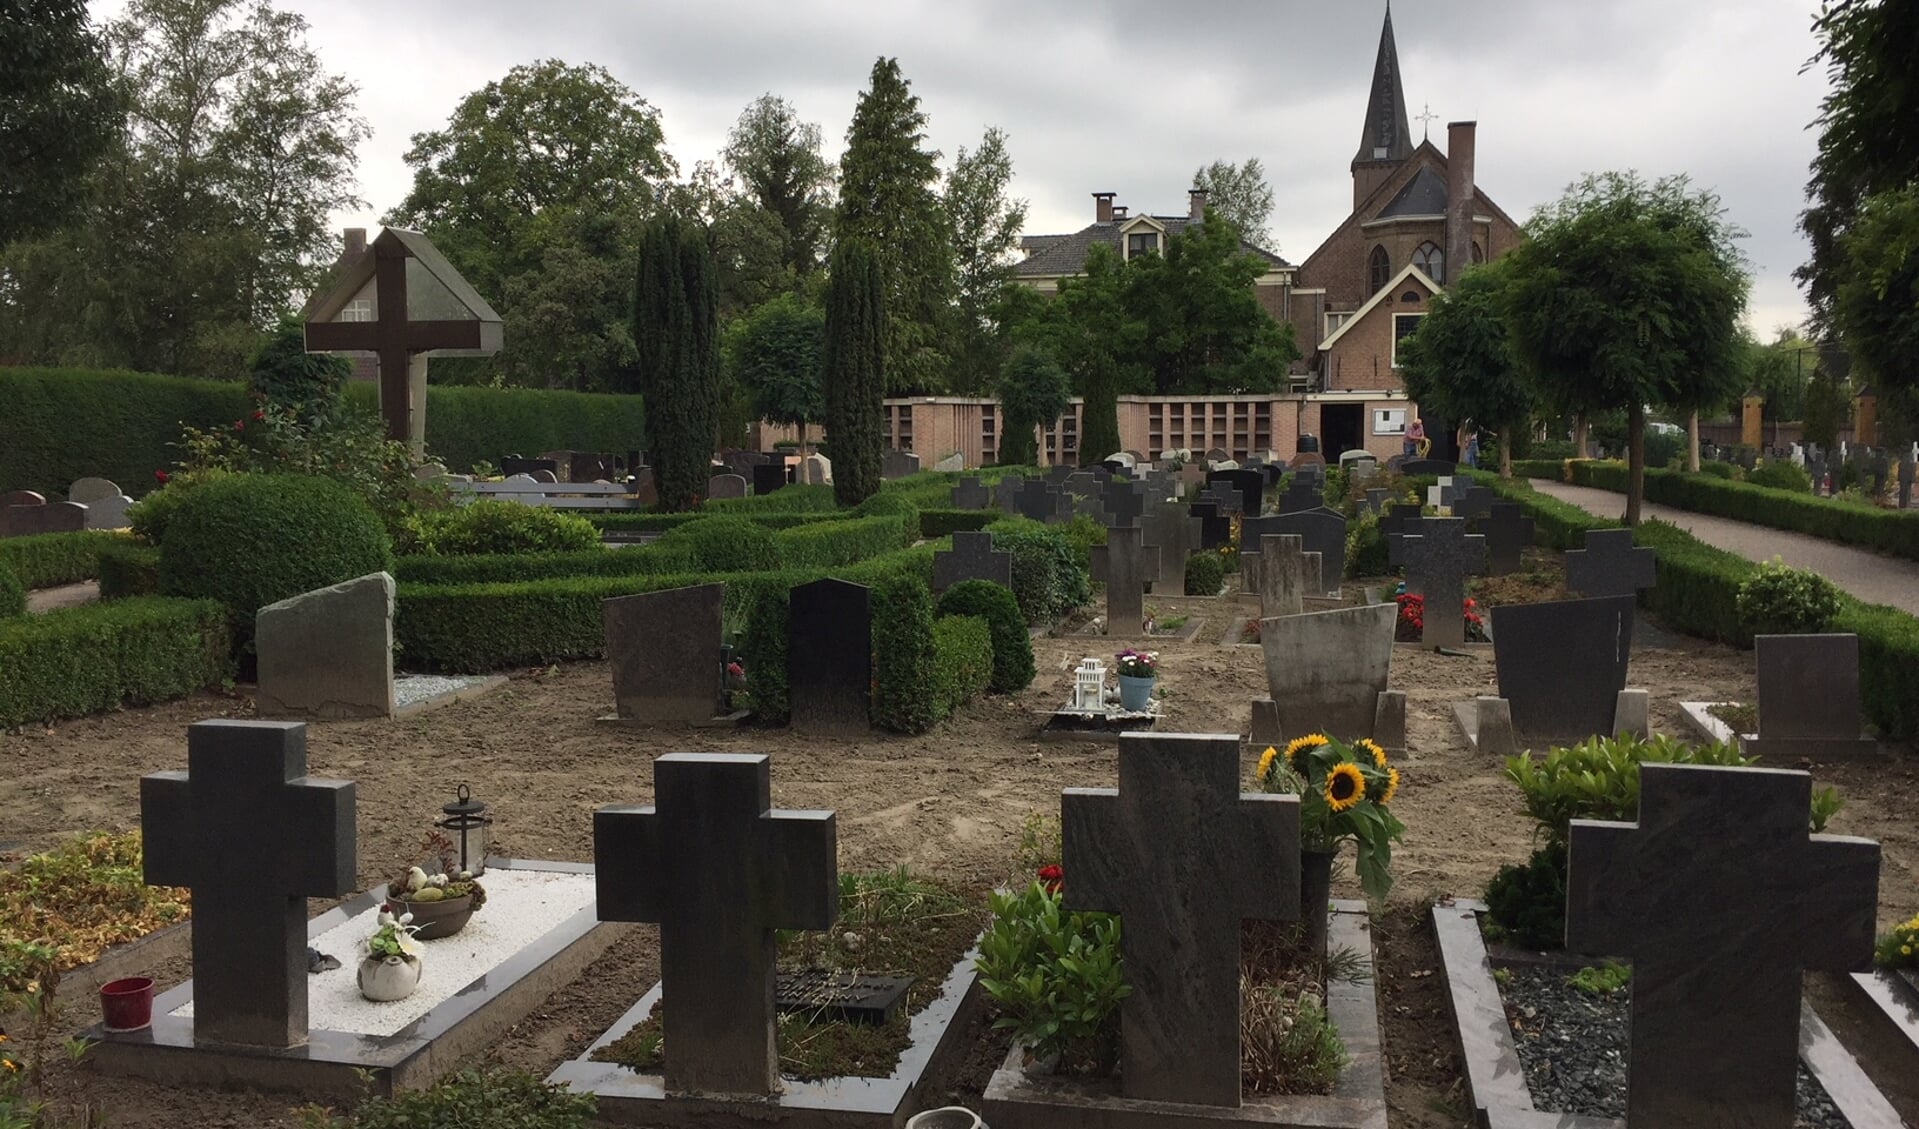 Evelien Blom van Stichting Alert&Zorgzaam: ,,Op de katholieke begraafplaats komen dit soort ruimpraktijken niet voor.